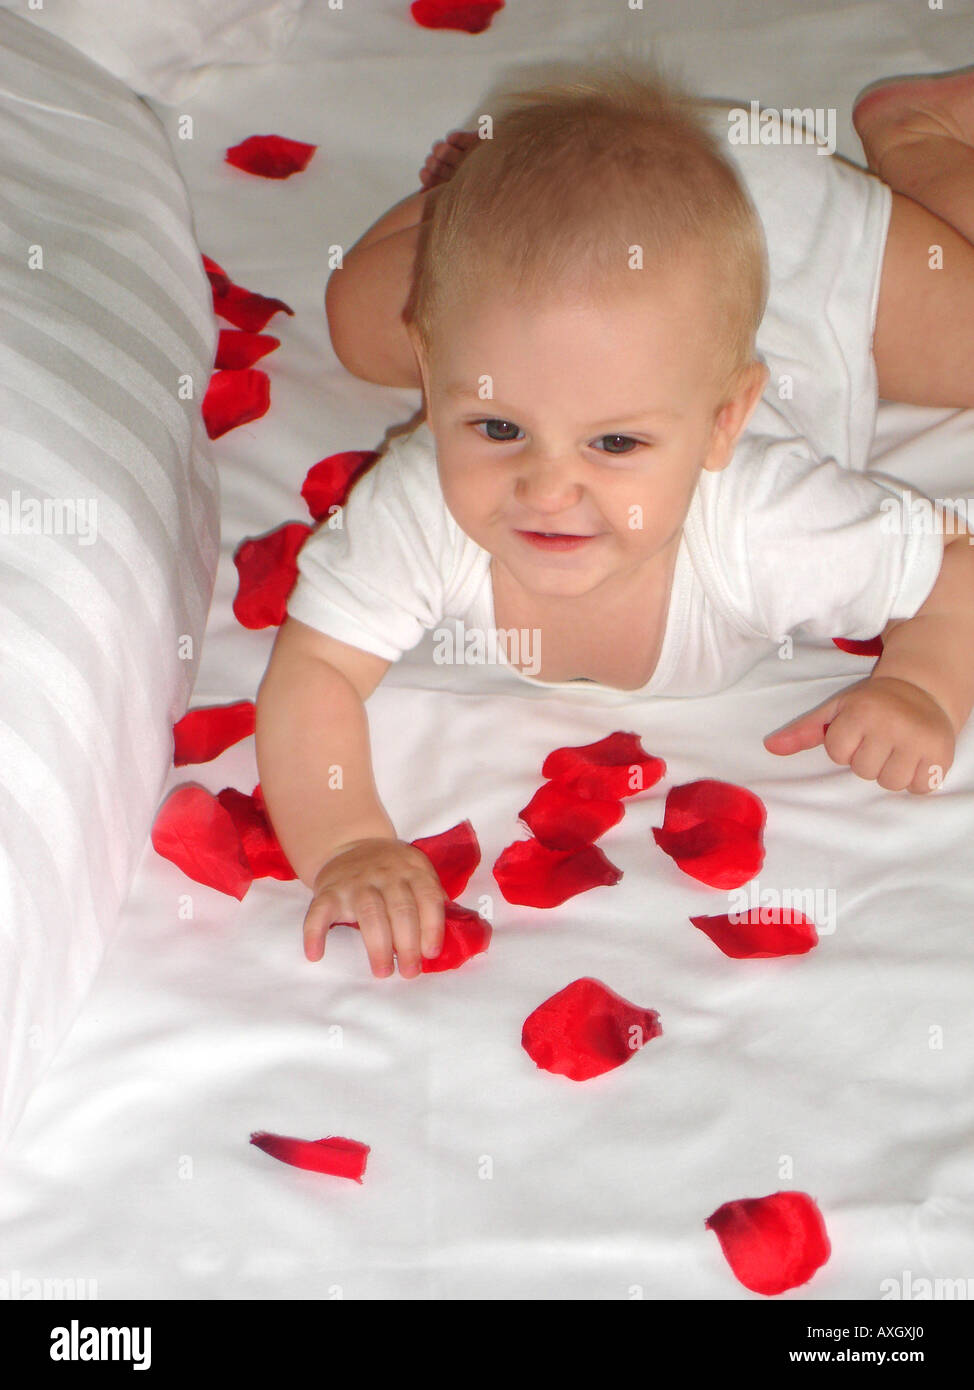 Fiducioso di 6 mesi il bambino sul letto con petali rossi zufriedenes 6 Monate altes Baby auf Bett mit roten Blütenblättern Foto Stock